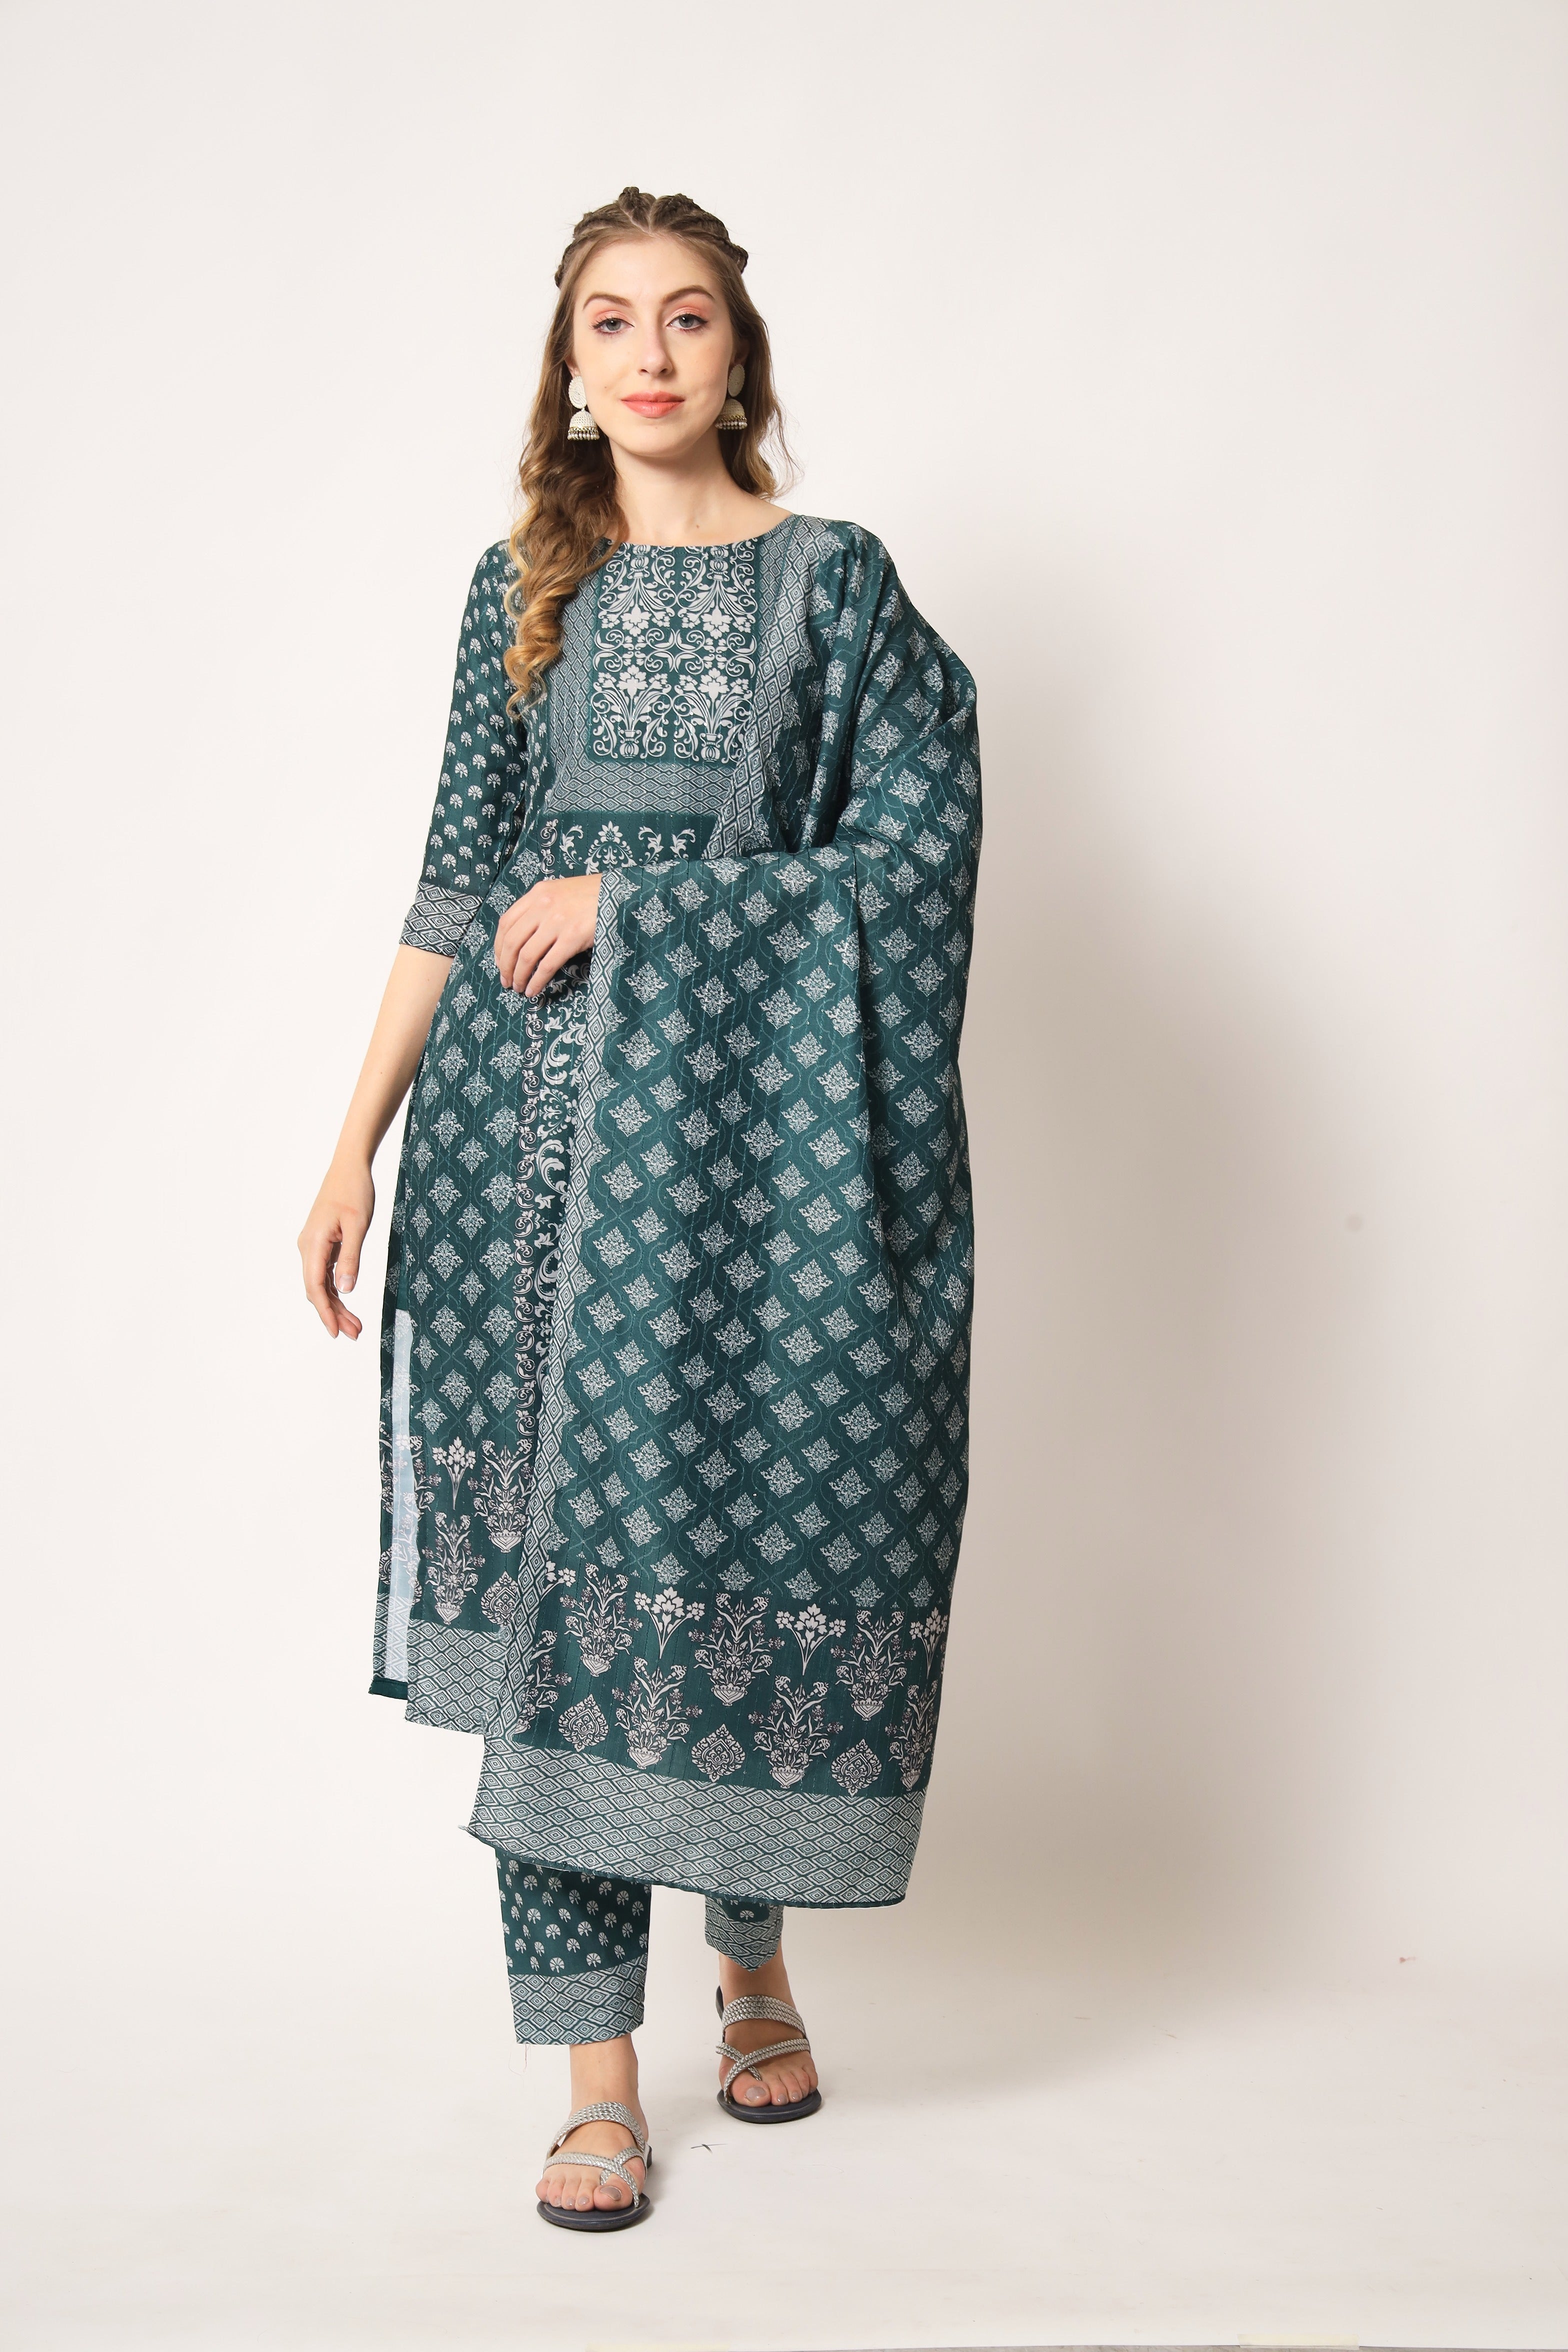 Embroidered Muslin Pine Green Trendy Salwar Kameez For Women